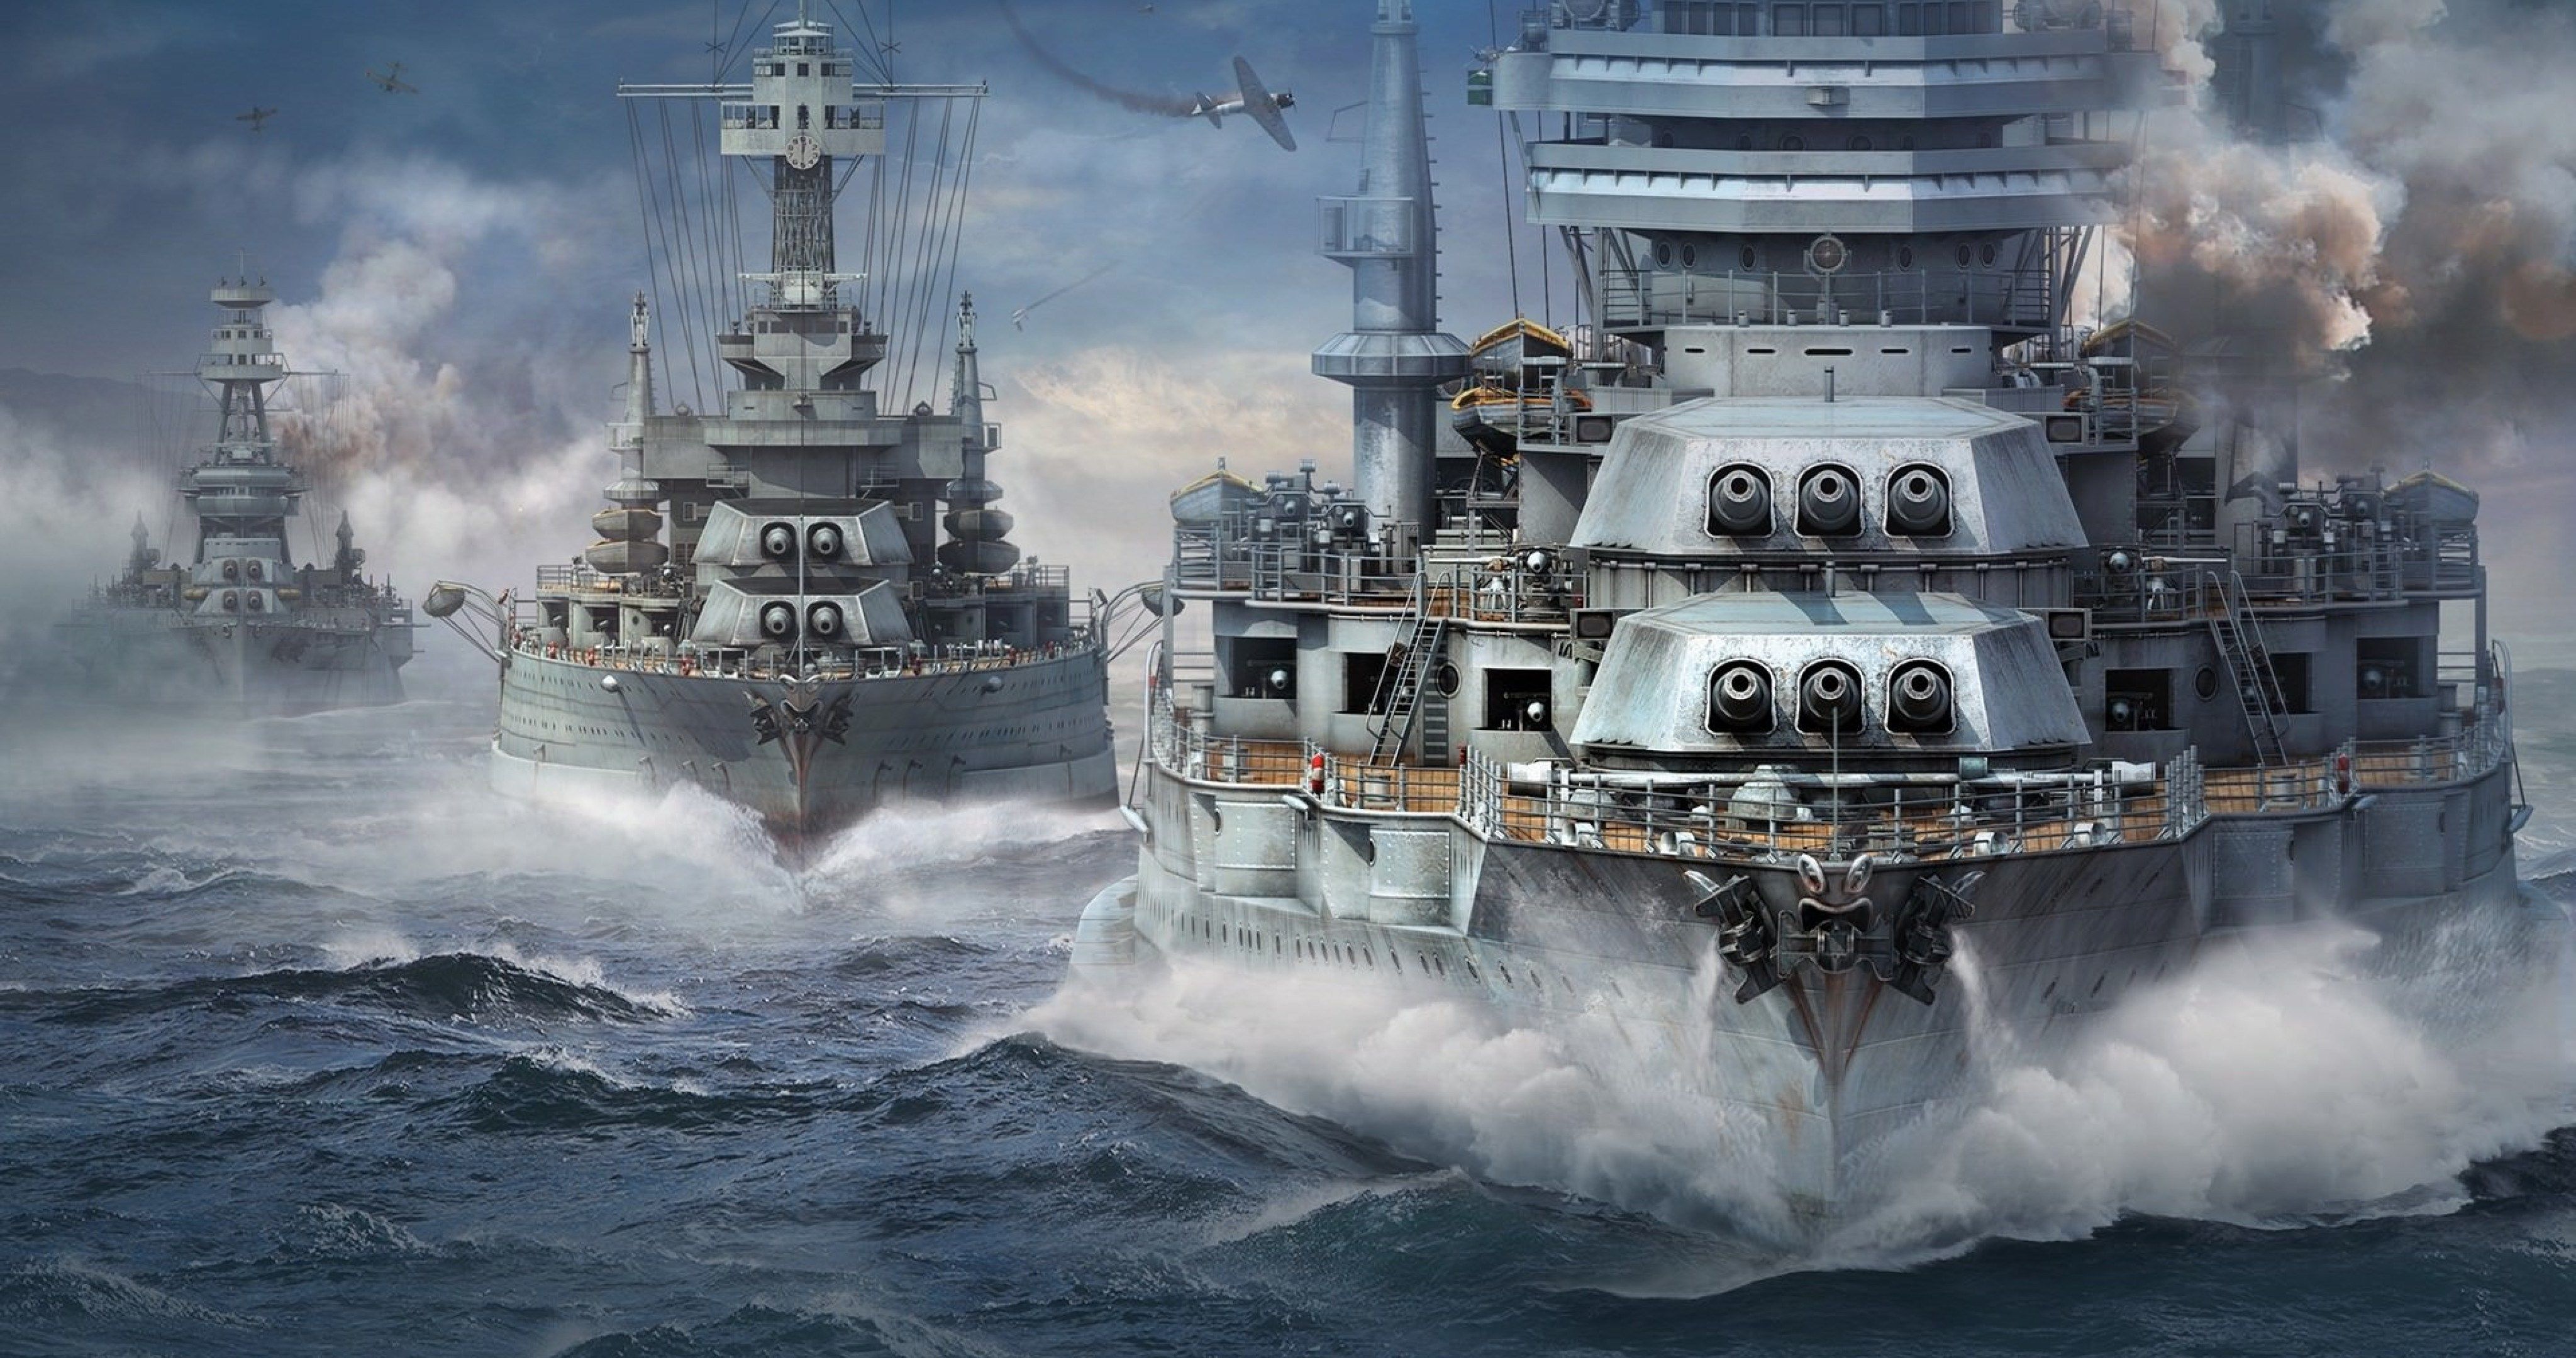 世界的战舰 军舰 战舰 海军的船 沉重的巡洋舰高清壁纸 武器图片 桌面背景和图片